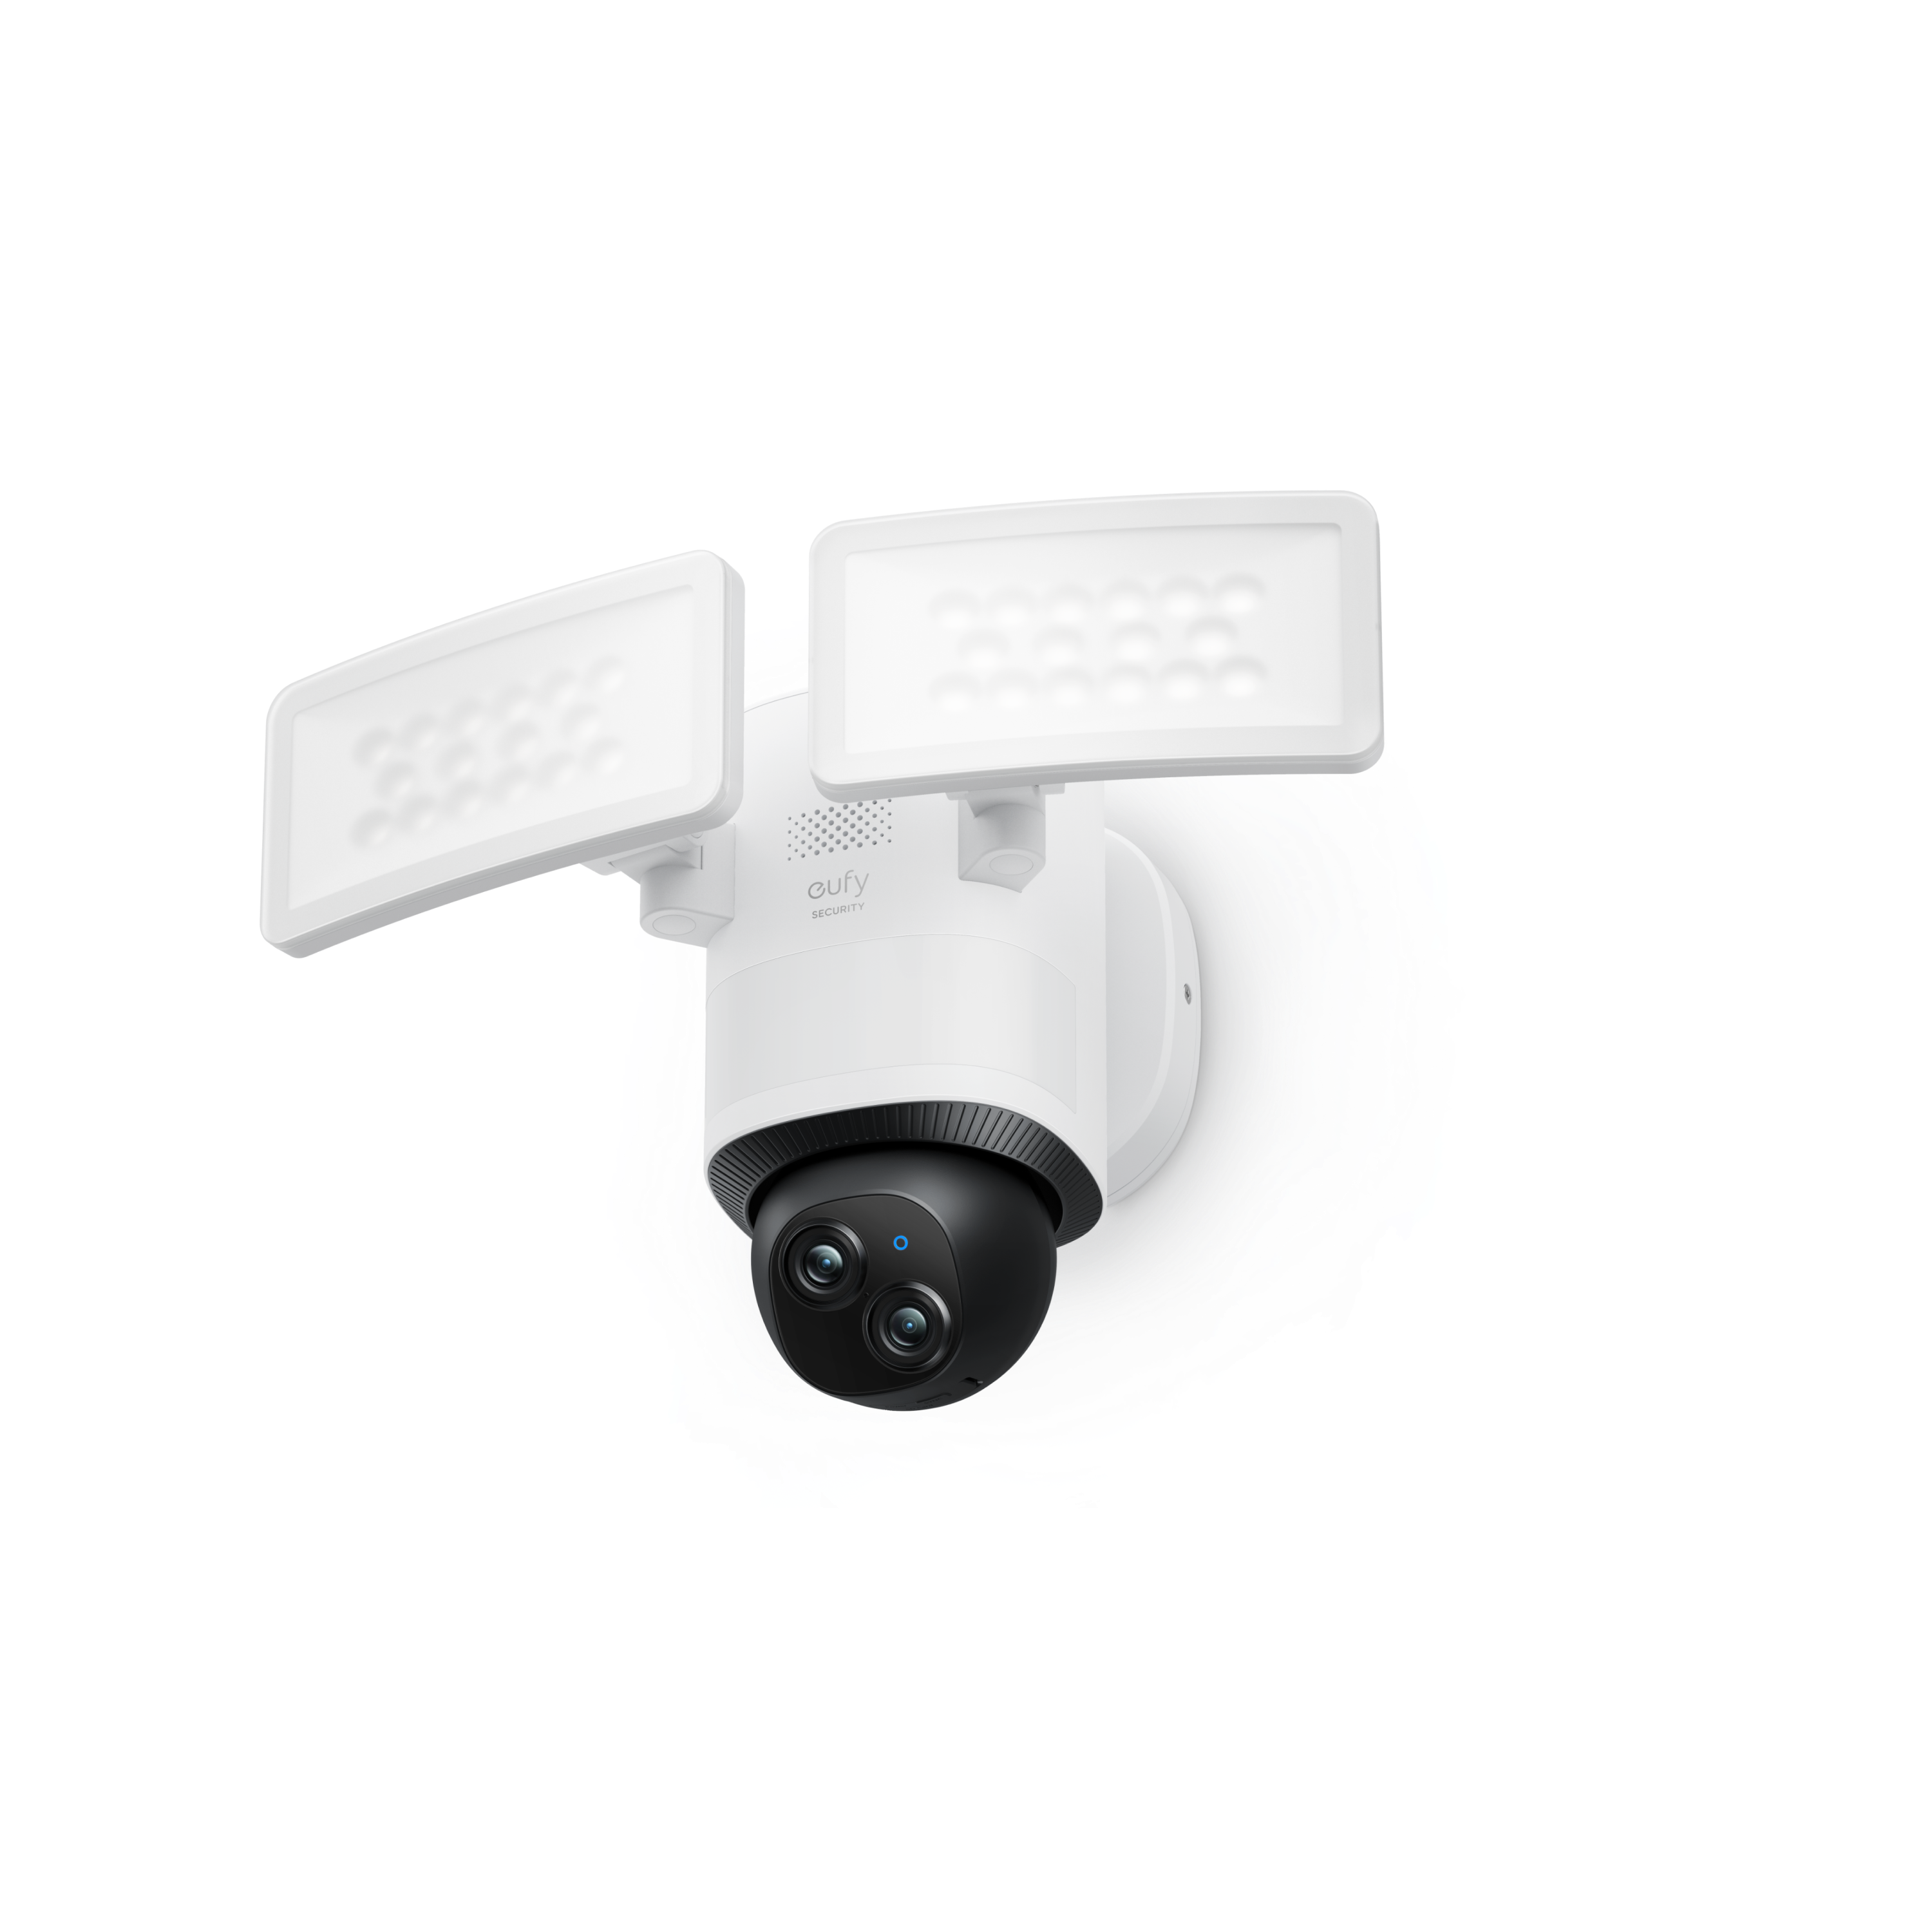  eufy Security Cámara interior S350, cámaras duales, cámara de  seguridad con resolución 4K UHD con zoom de 8 x y PTZ de 360°, IA  humana/mascota, ideal para monitor de bebé/seguridad en